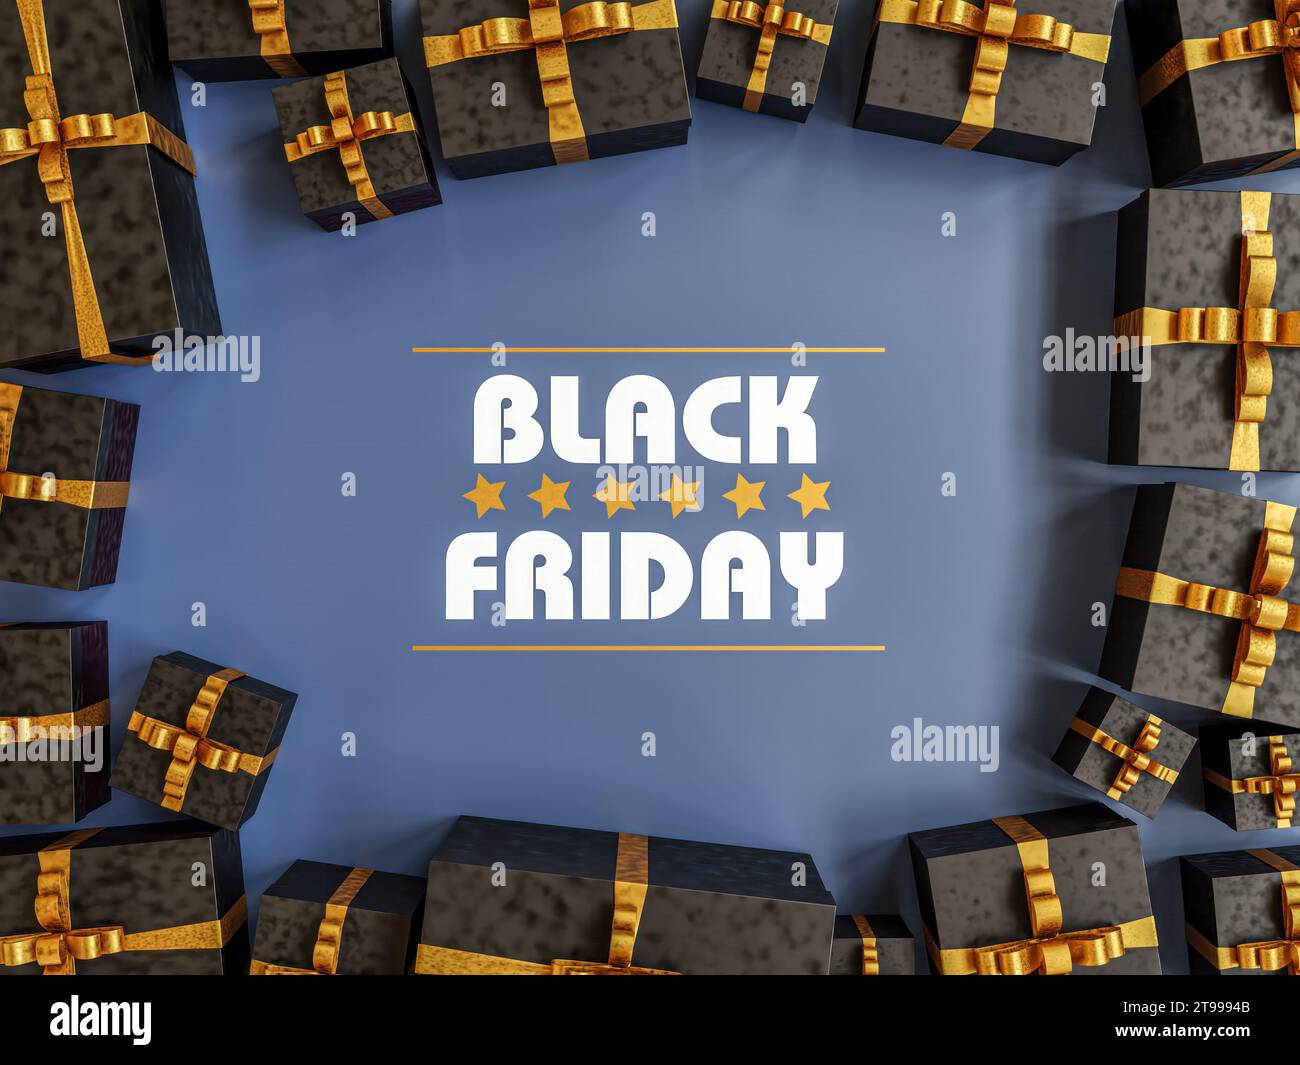 Rendu 3D de boîtes cardoards noires disposées en cadre sur fond bleu foncé - concept Black Friday Banque D'Images